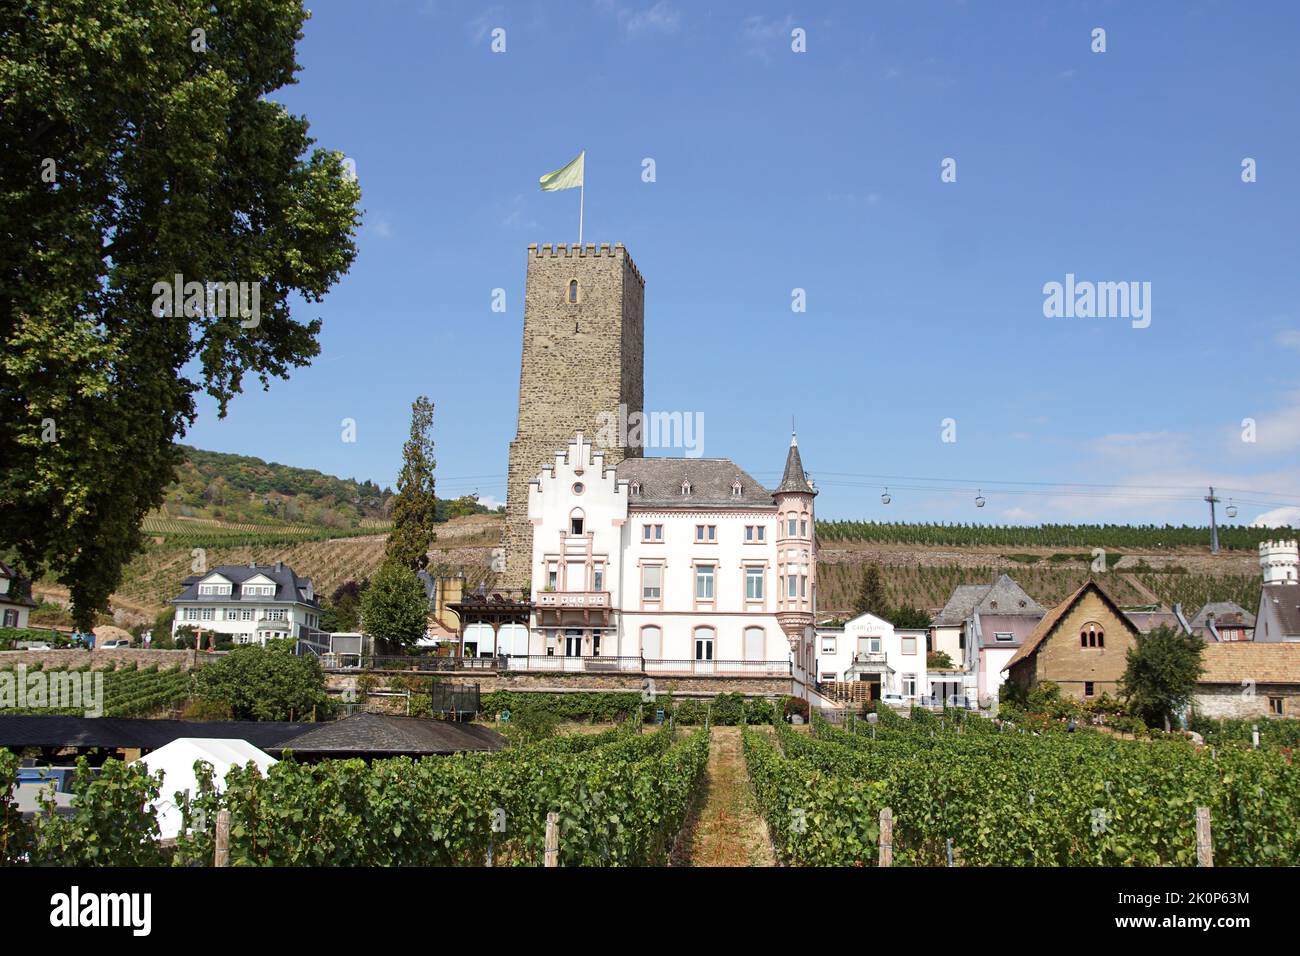 Vue sur le château de Boosenburg, un donjon roman. Vignes dans la ville allemande de Rüdesheim. Allemagne, été, septembre. Banque D'Images